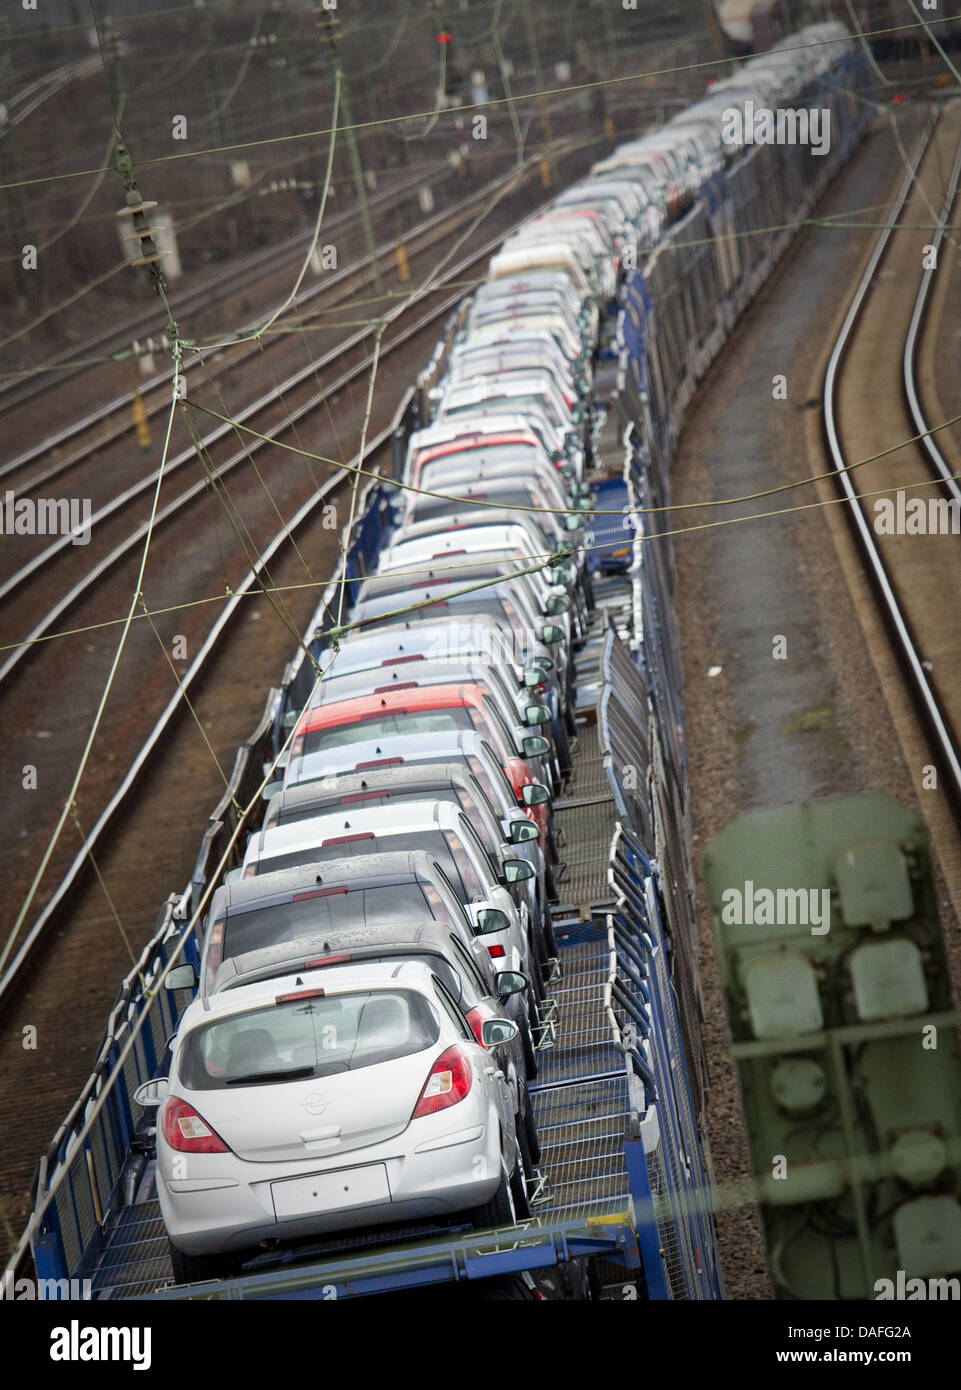 Un fichier photo datée du 9 mars 2009 montre les voitures sur un train venant de l'usine Opel à Rüsselsheim, Allemagne. L'Institut ifo ont présenté un indice du climat des affaires pour le mois de février. Ils s'attendent à ce que le climat dans l'industrie allemande d'être un peu plus faible que dans les années passées. Photo : Frank Rumpenhorst Banque D'Images